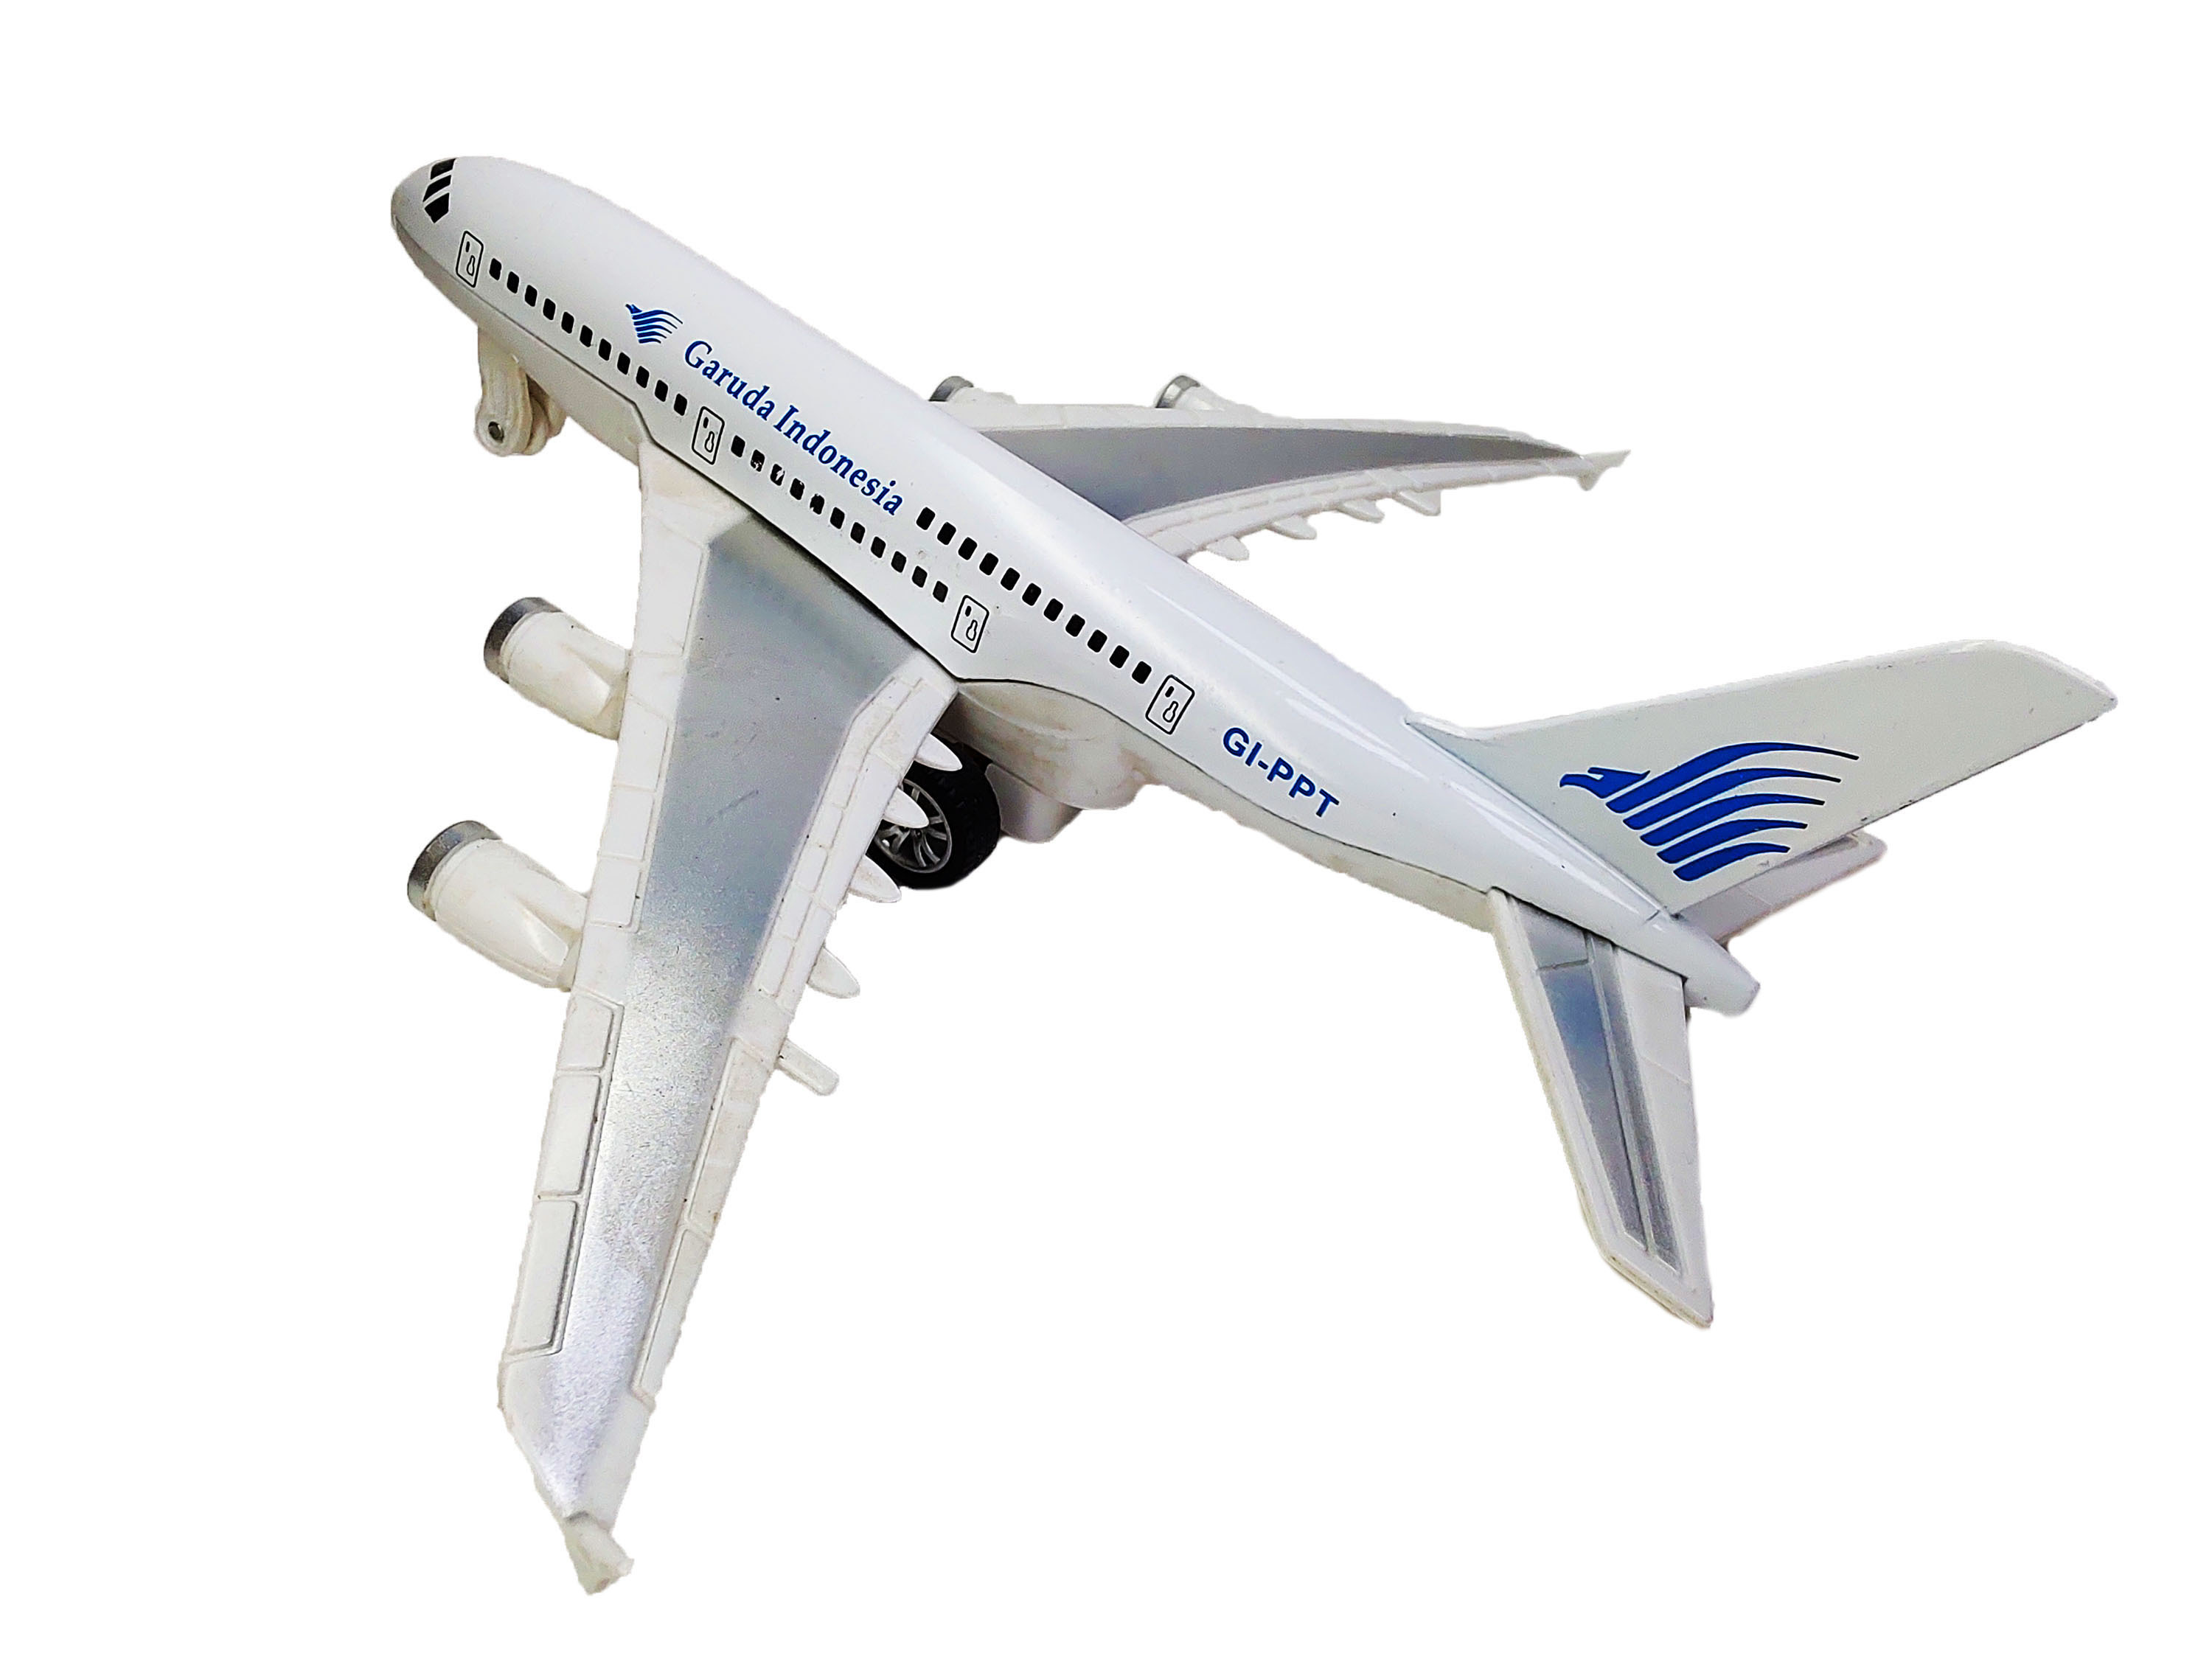 Купить металлический самолет. Металлические модели самолетов. Модели пассажирских самолетов. Модели пассажирских самолетов из металла. Макет авиалайнера.